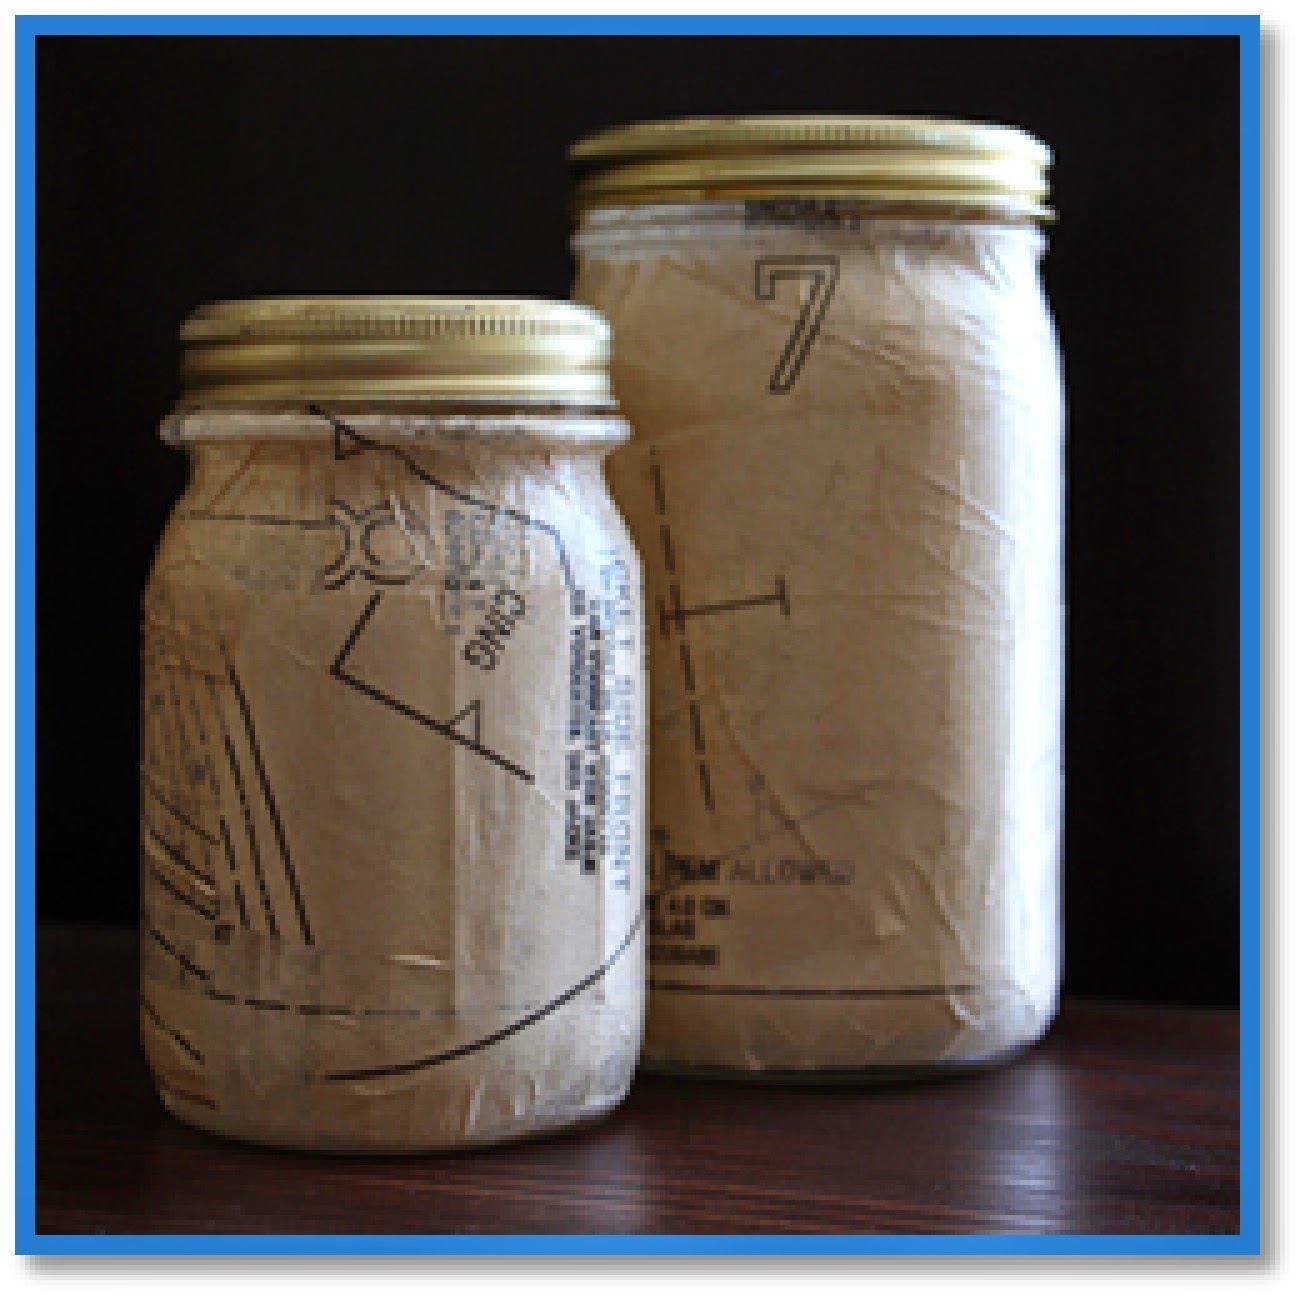 sewing patterns decoupaged on mason jars